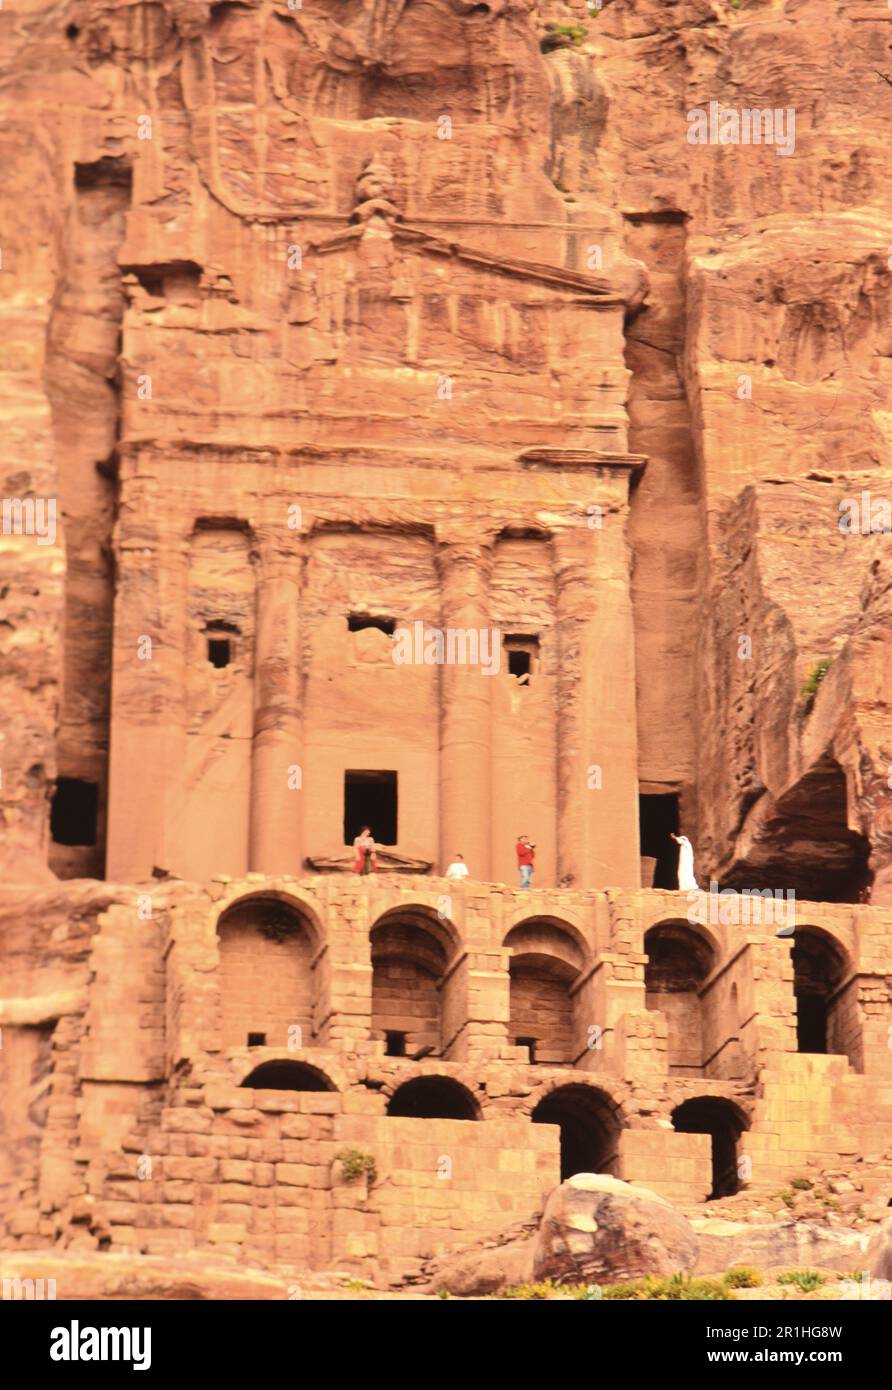 Petra Jordan: Touristen erkunden die Mauer der Gräber, die vor über 2000 Jahren in Sandsteinklippen geschnitzt wurde. Foto: Joan Iaconetti Ca. 1995 Stockfoto